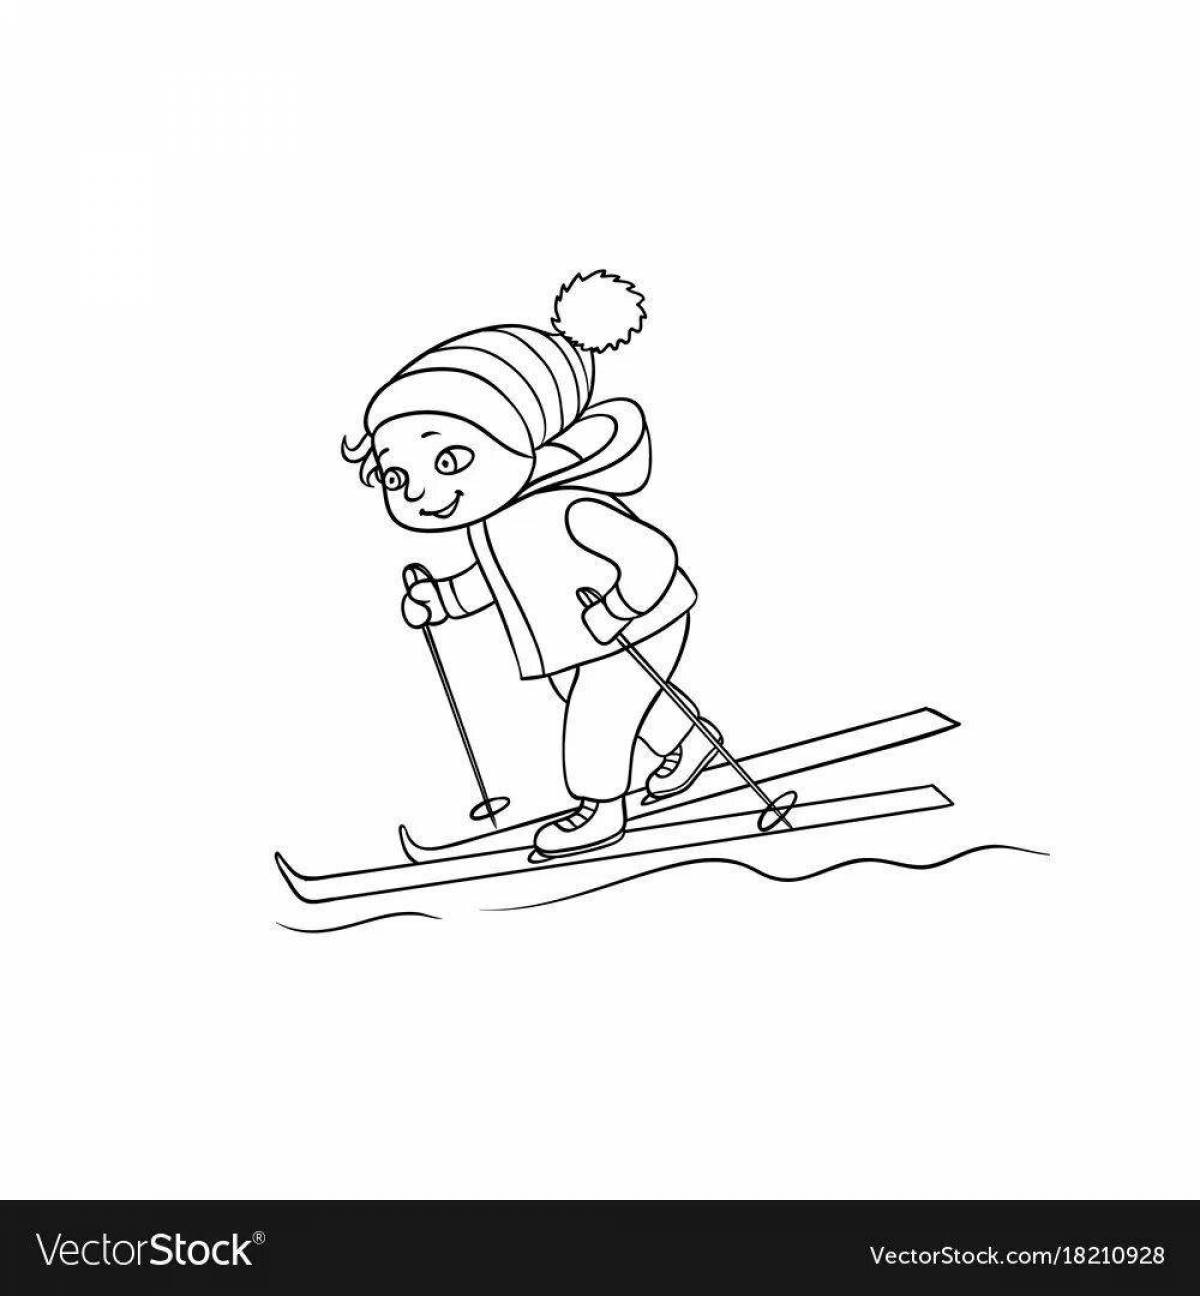 Мальчик катается на лыжах черно белая